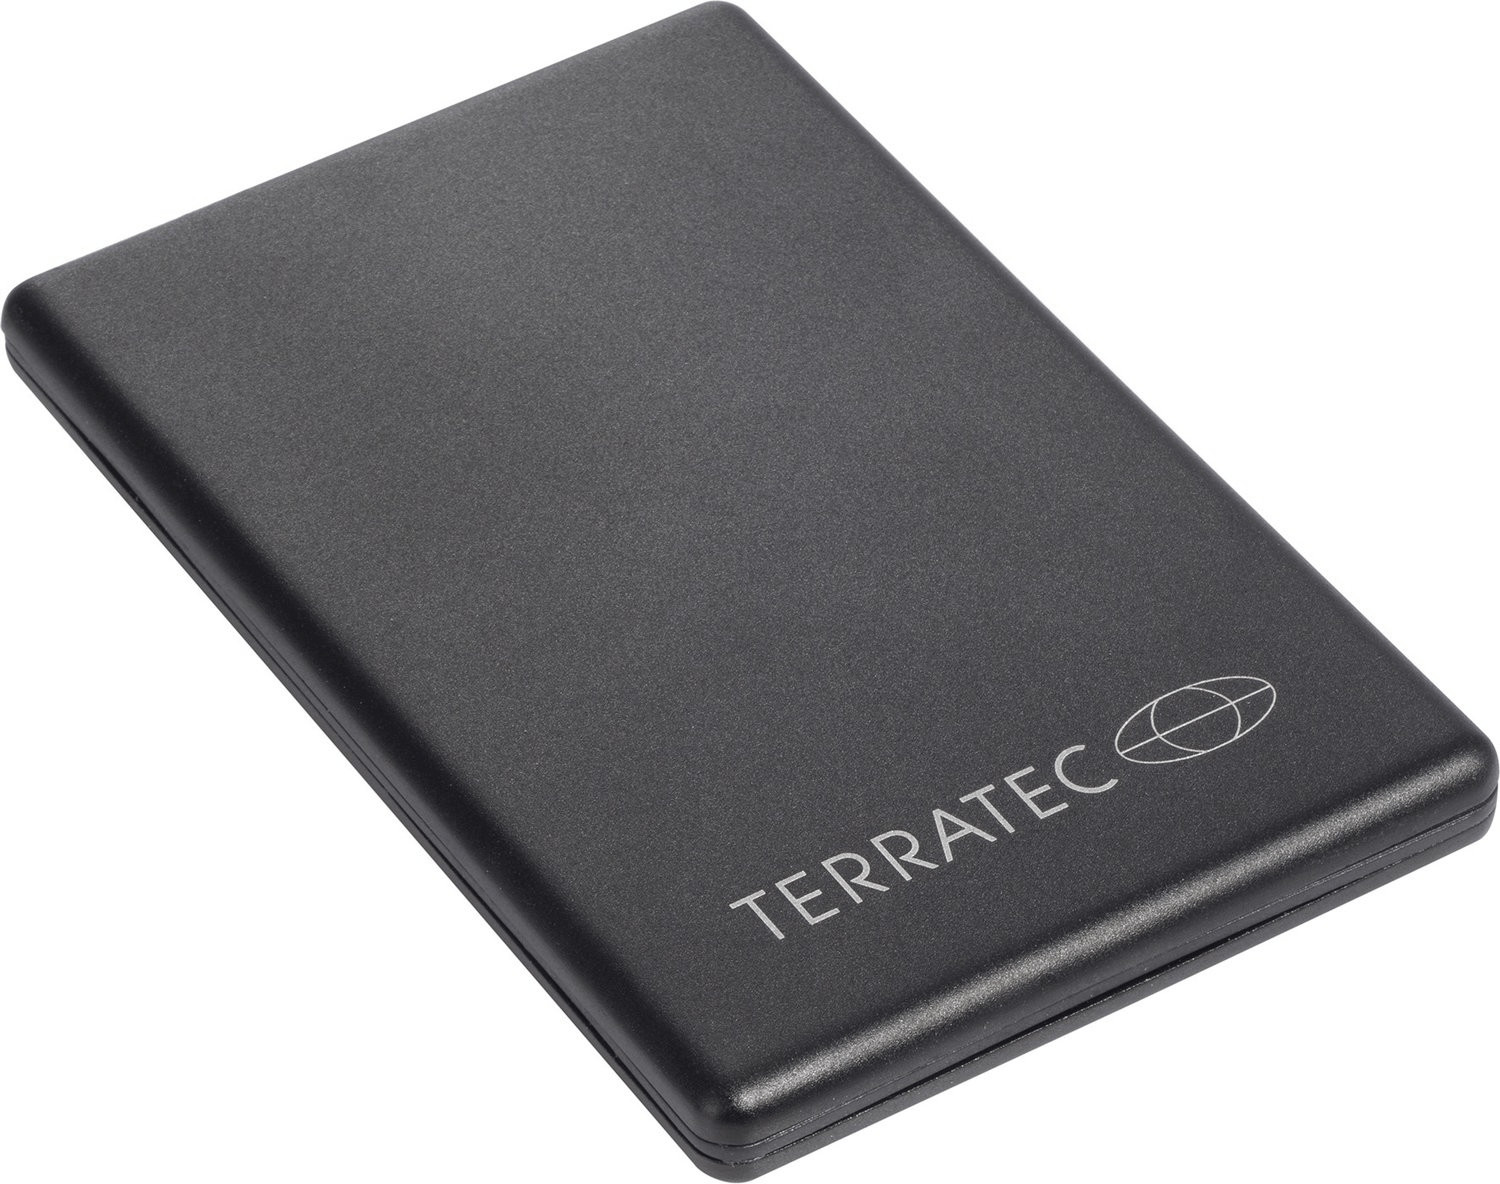 terratec t5